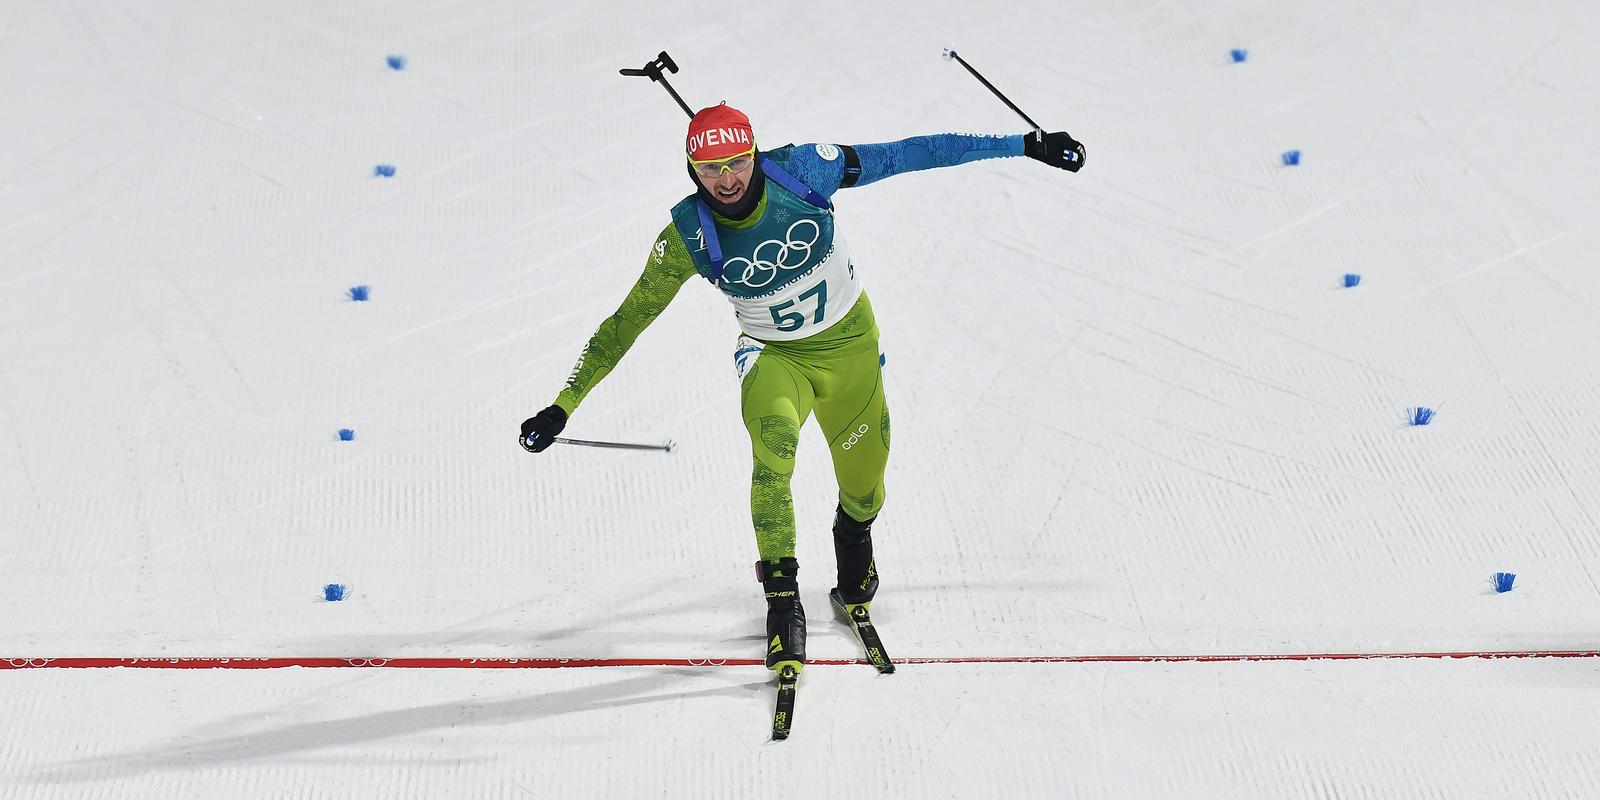 Slovenska odprava si je pred odhodom na igre zadala cilj osvojiti medaljo, ki jo zdaj po zaslugi Jakova Faka tudi ima. Foto: Reuters